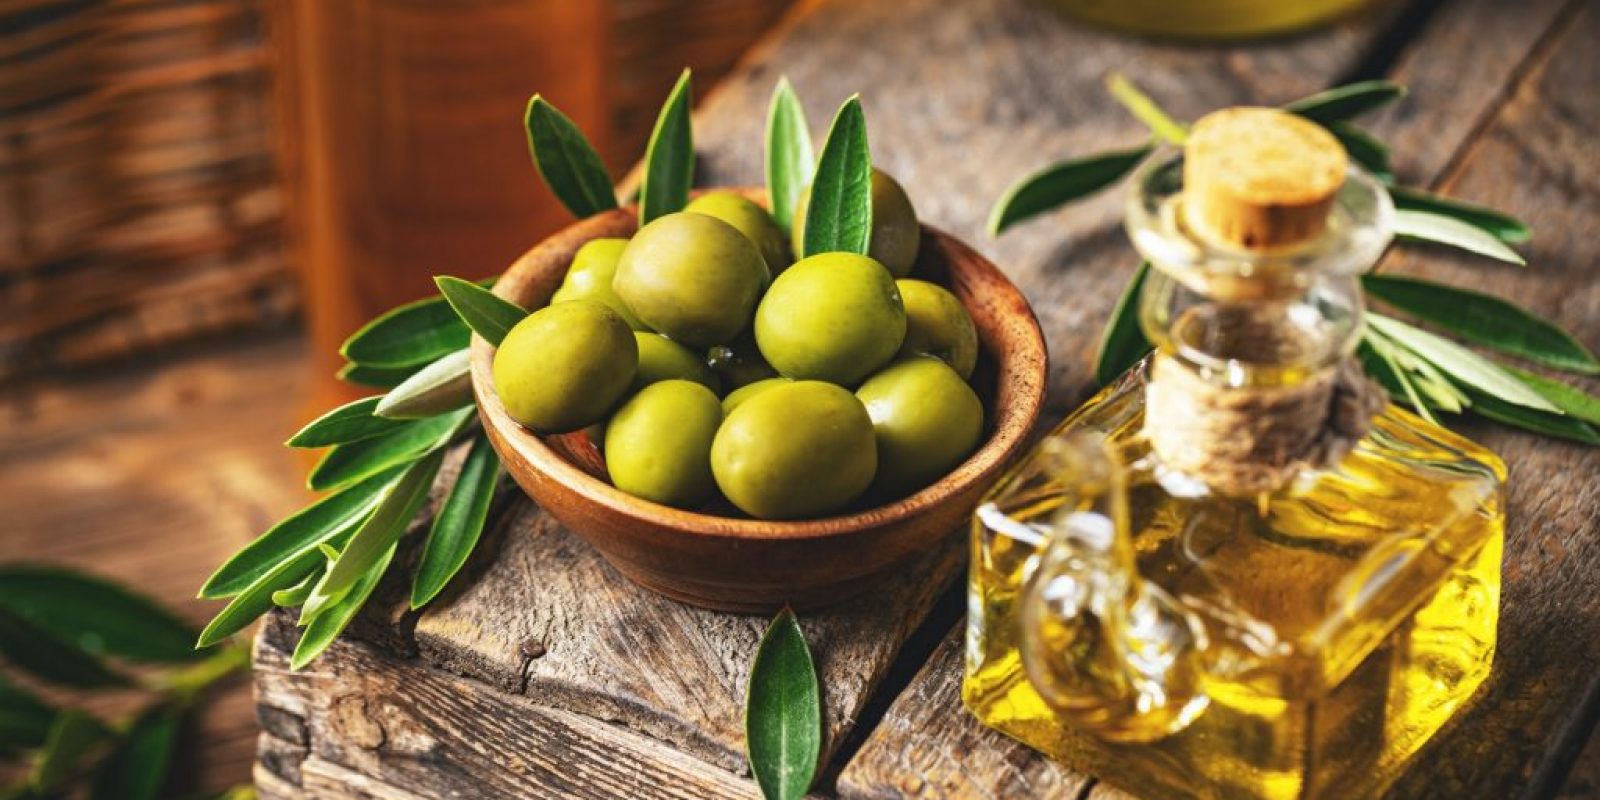 Welches Olivenöl verwenden Sie zum Kochen?